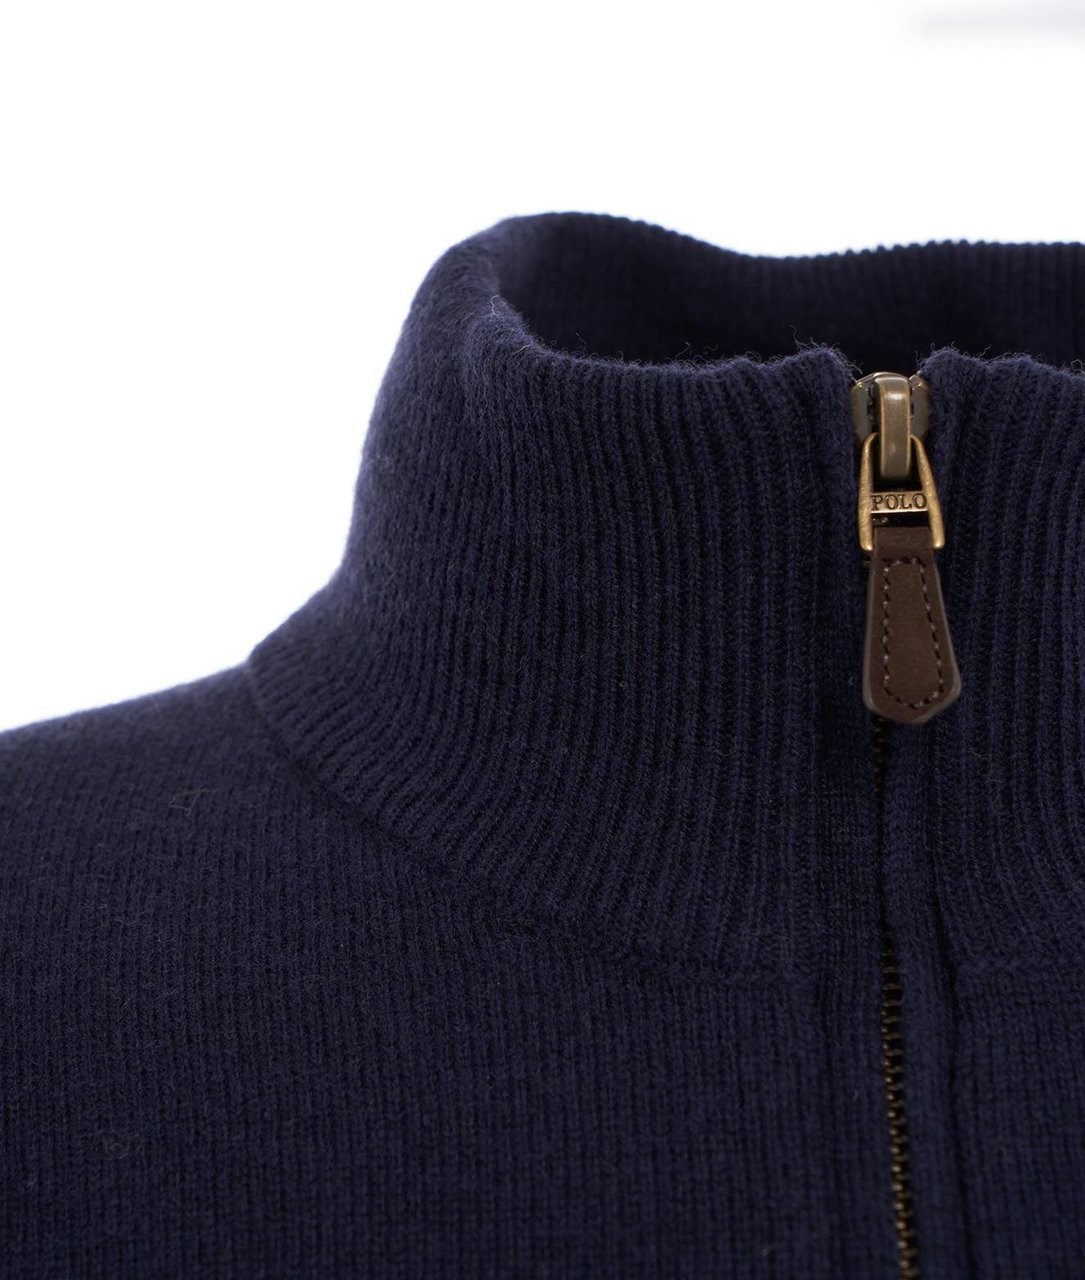 Ralph Lauren Knit Sweater Blue Blauw